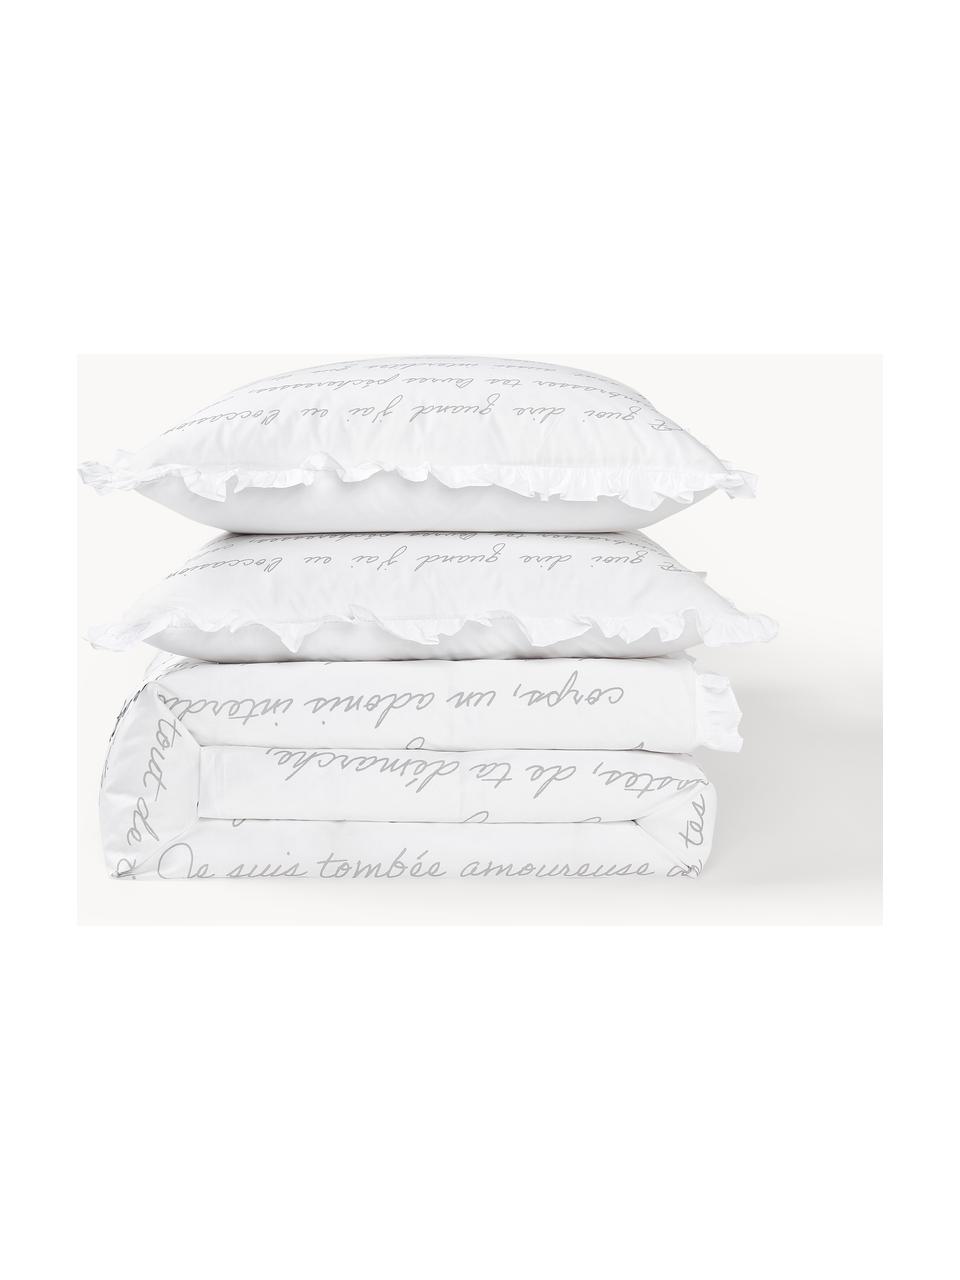 Housse de couette en percale de coton Leire, Blanc, gris, larg. 200 x long. 200 cm